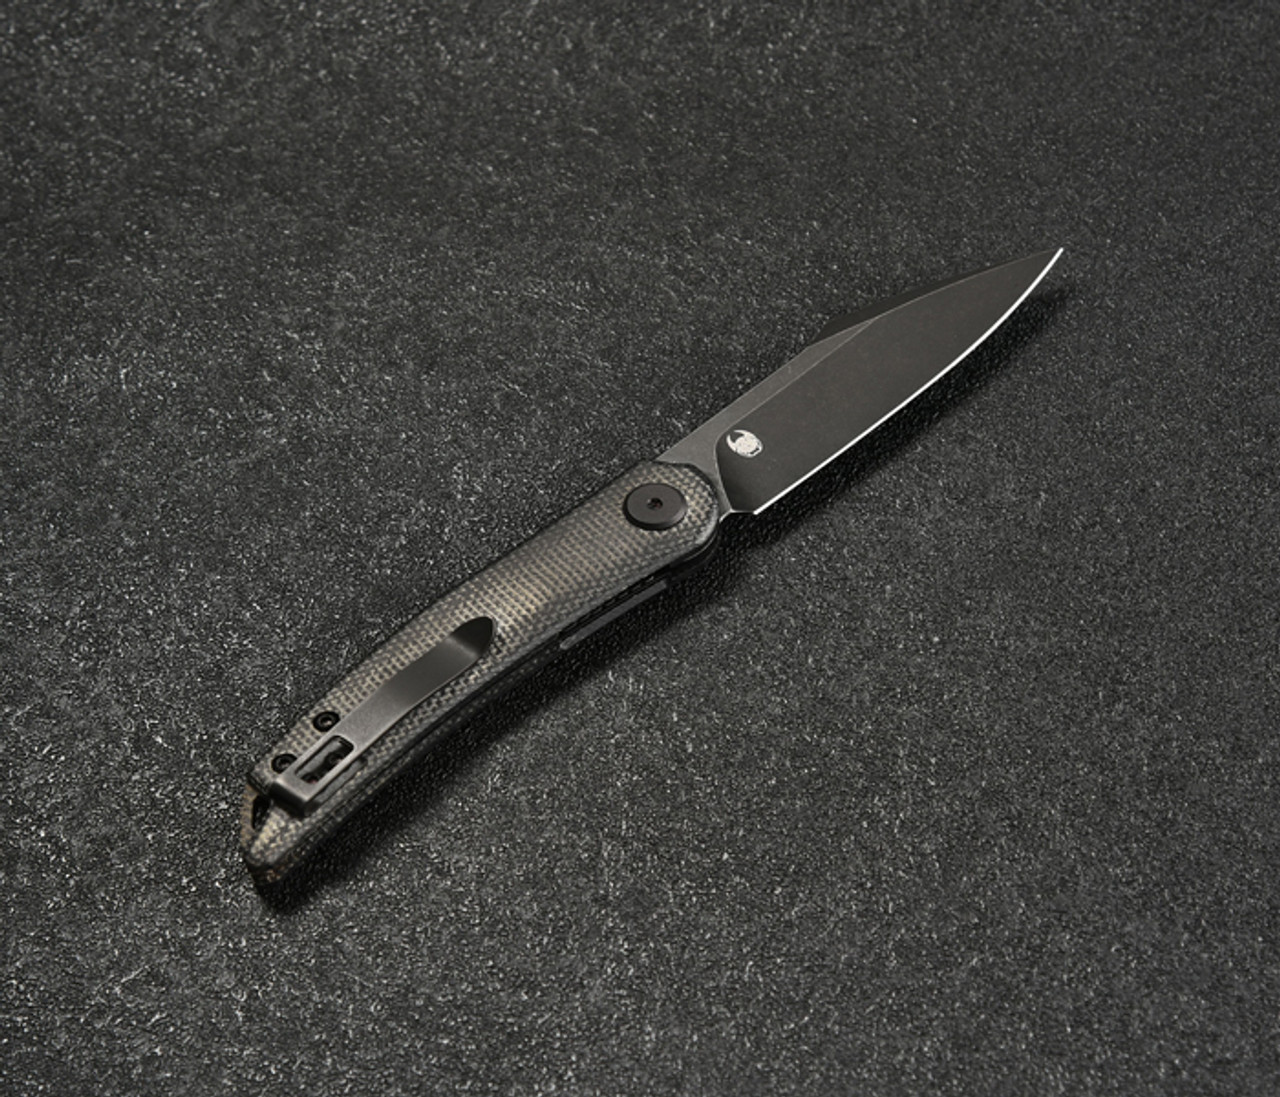 CMB Kisame Folding Knife (CMB03B) 3.14 in Blackwash K110, Black Micarta Handle